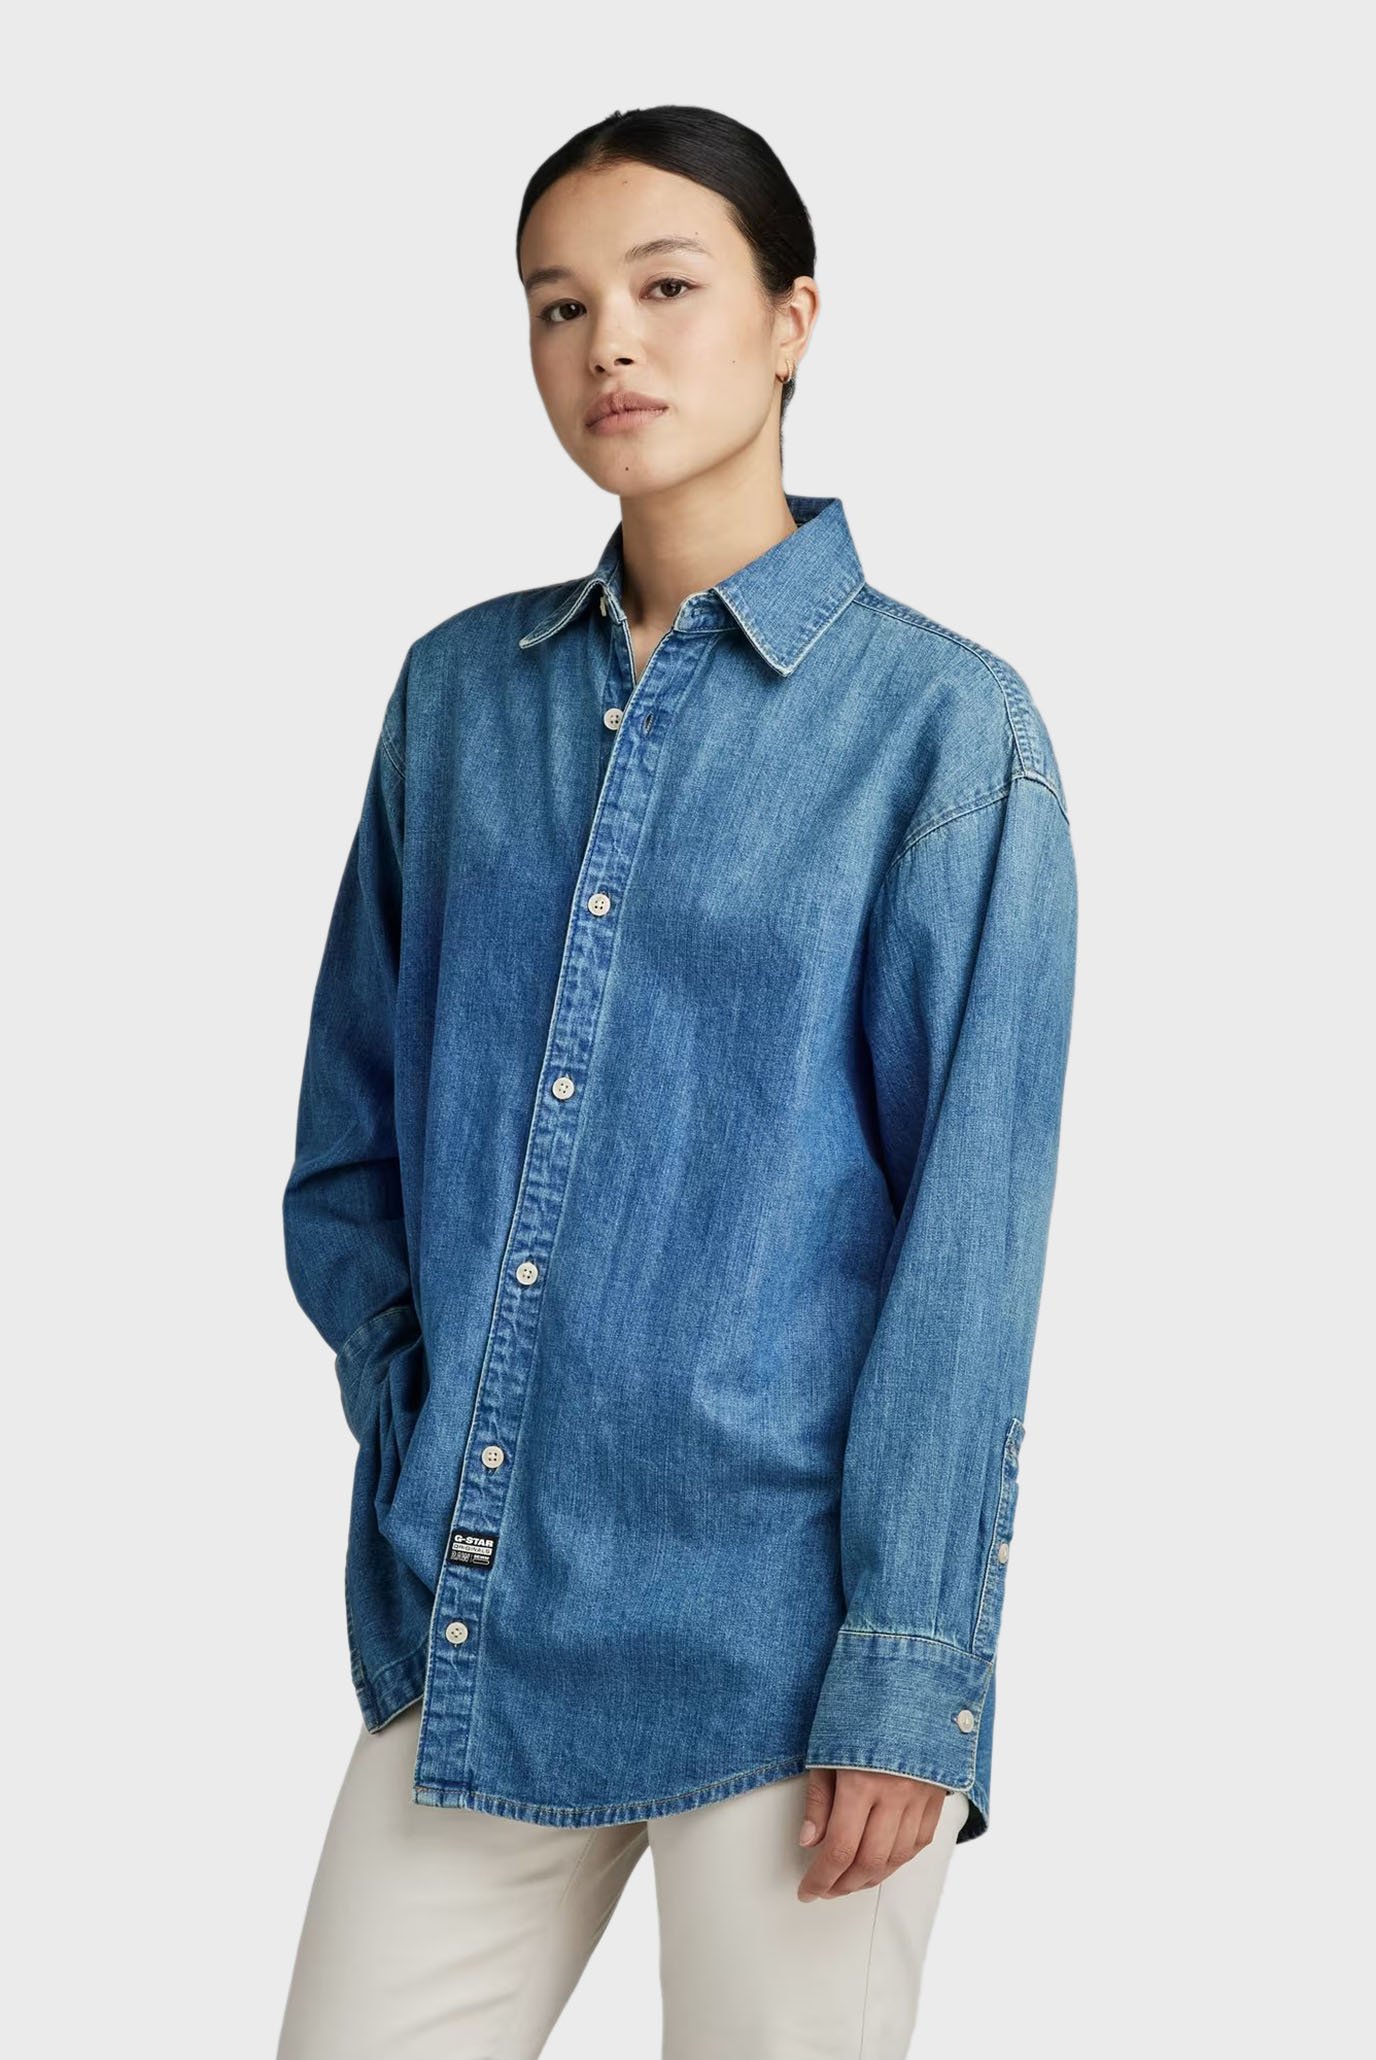 Женская синяя джинсовая рубашка Relaxed denim shirt pocketless 1